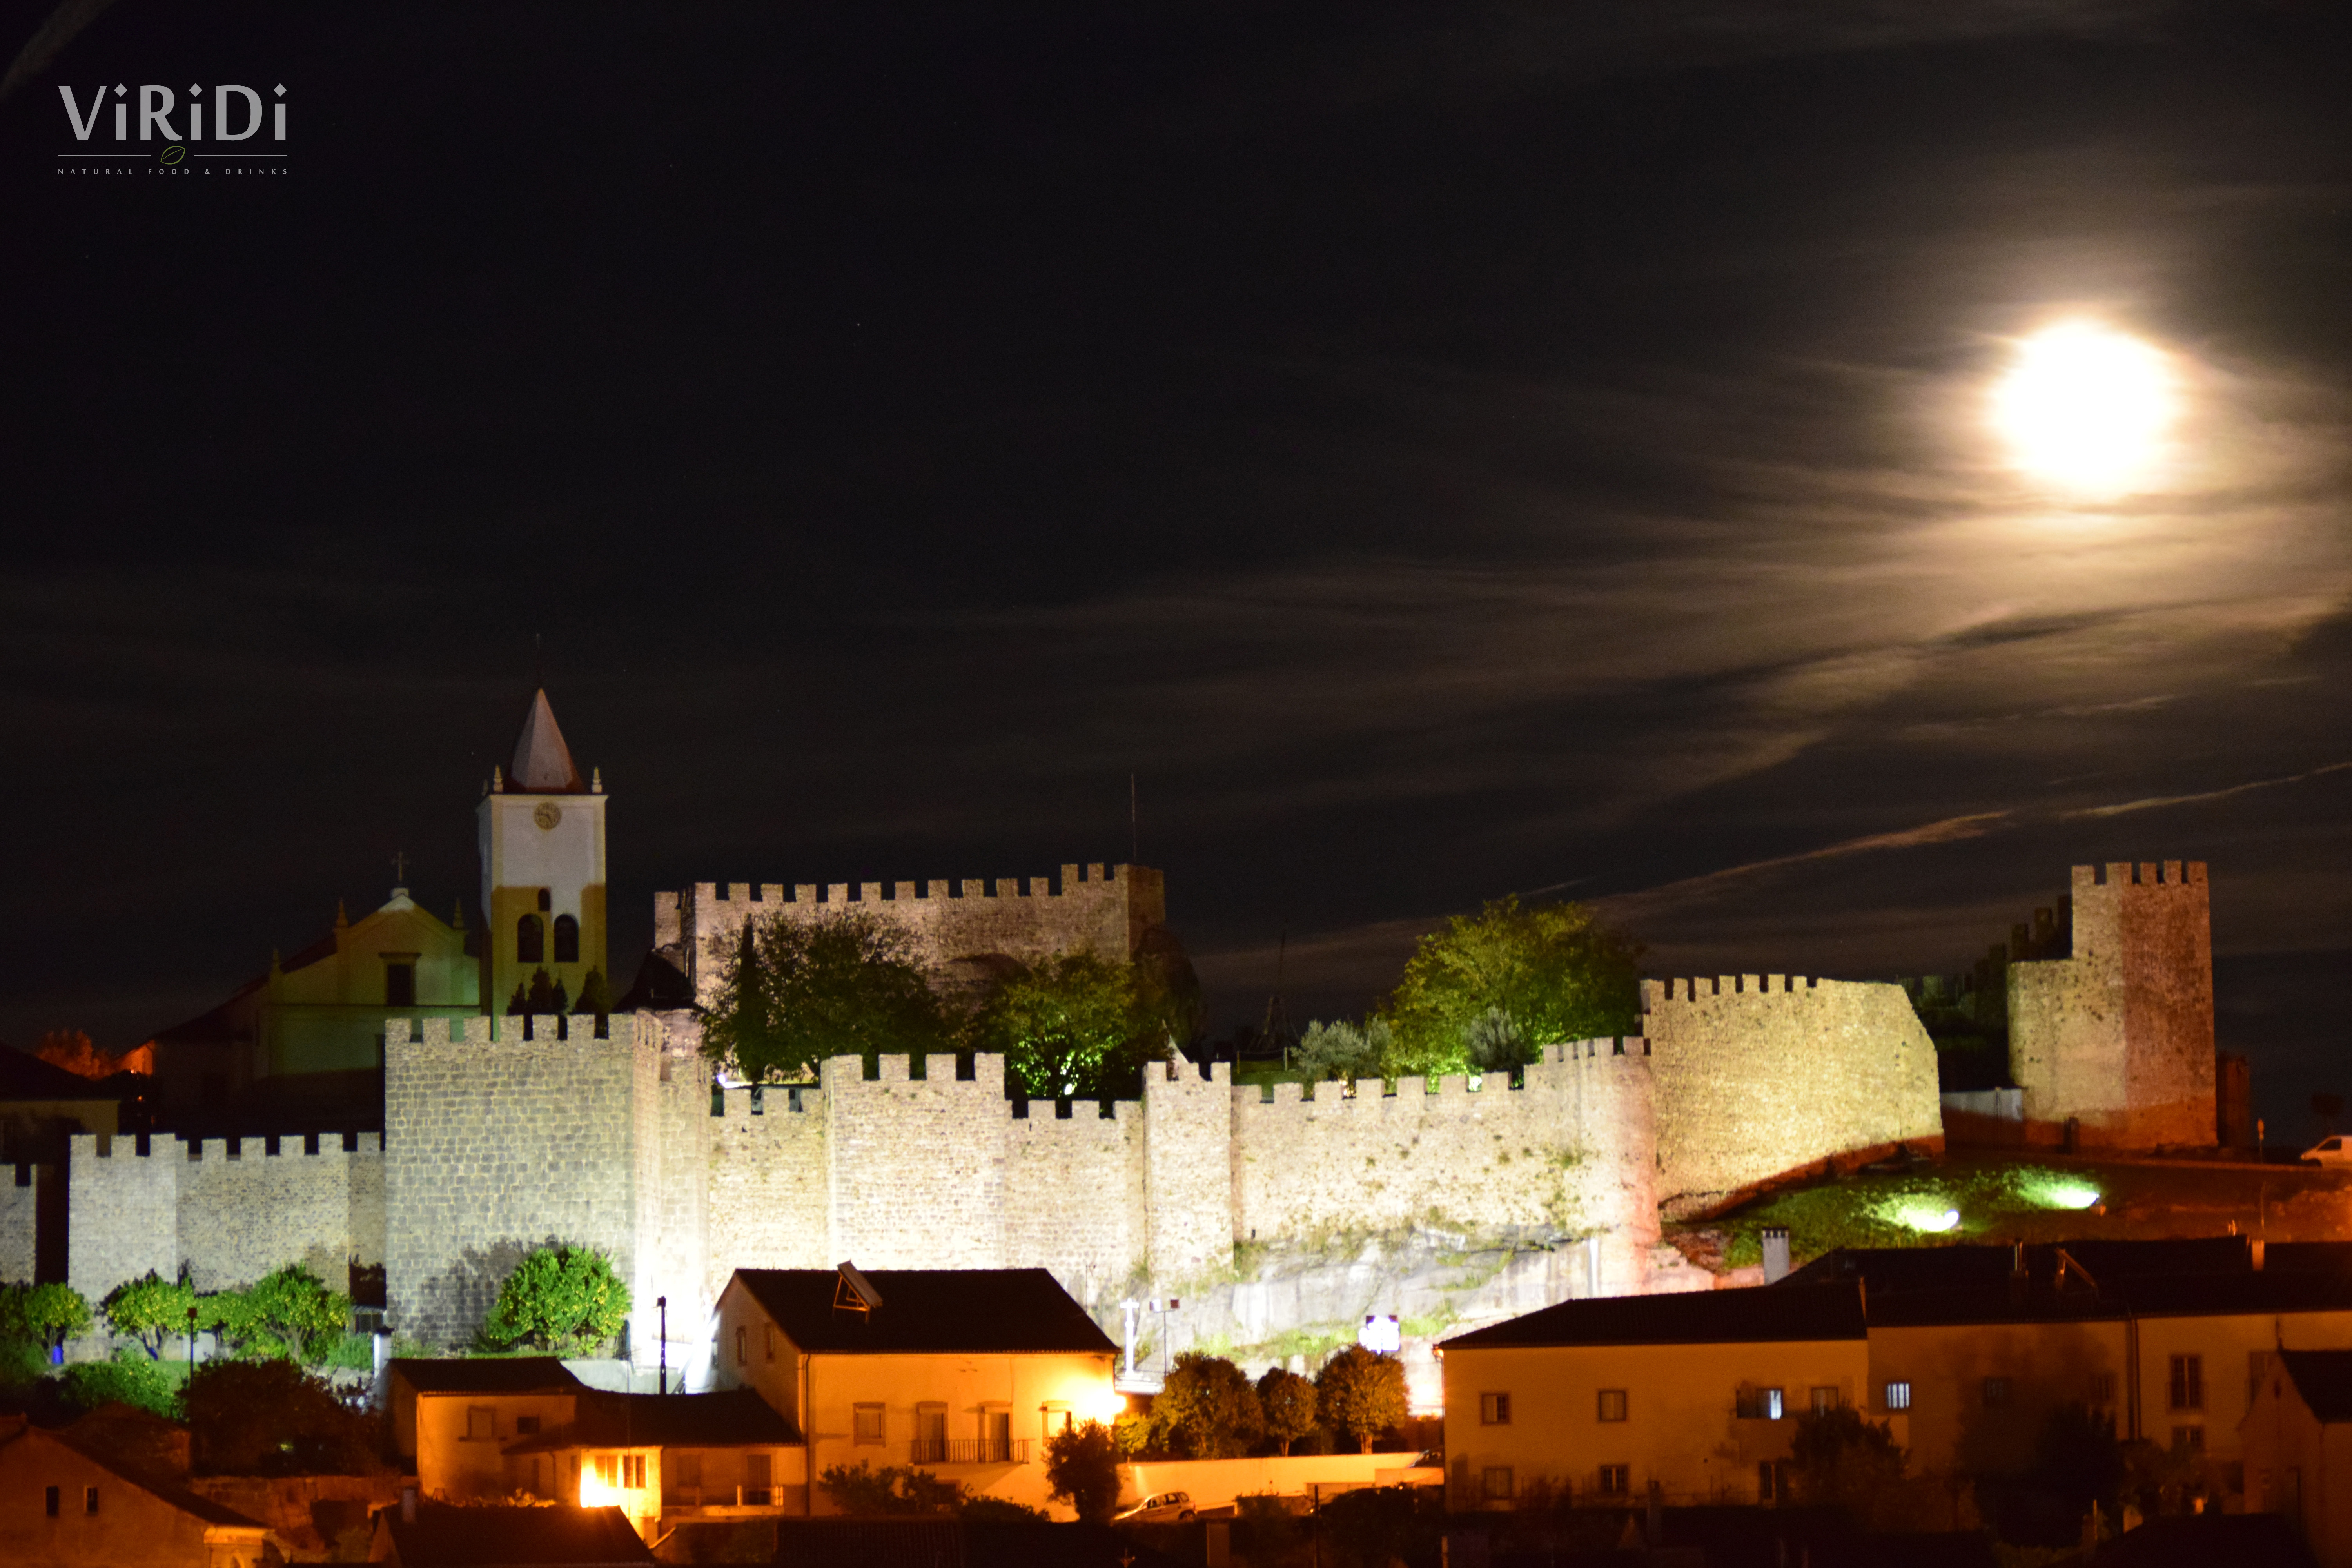 Fotos de Penela, Visitar Penela, o que fazer, castelos de portugal, Coimbra, castelos em Coimbra, passear, interior